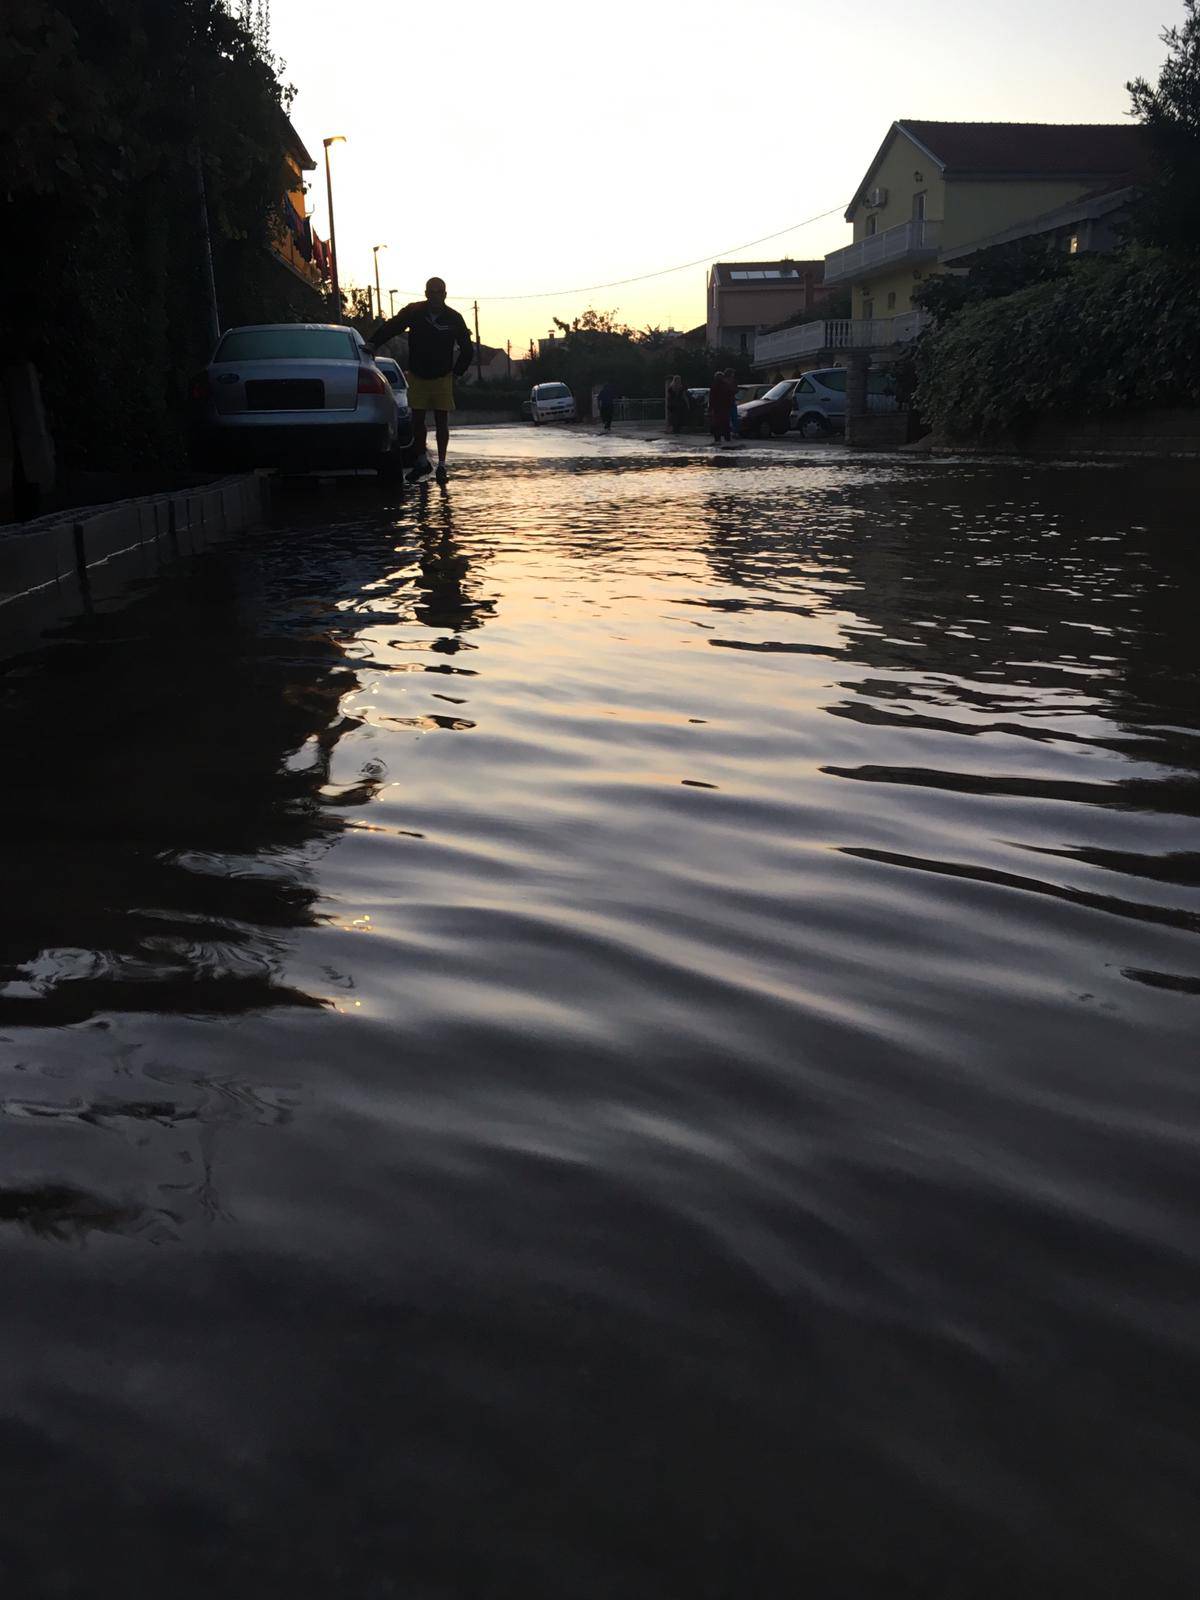 Pukla cijev i izazvala poplavu: Ljudi spašavali podrume i aute